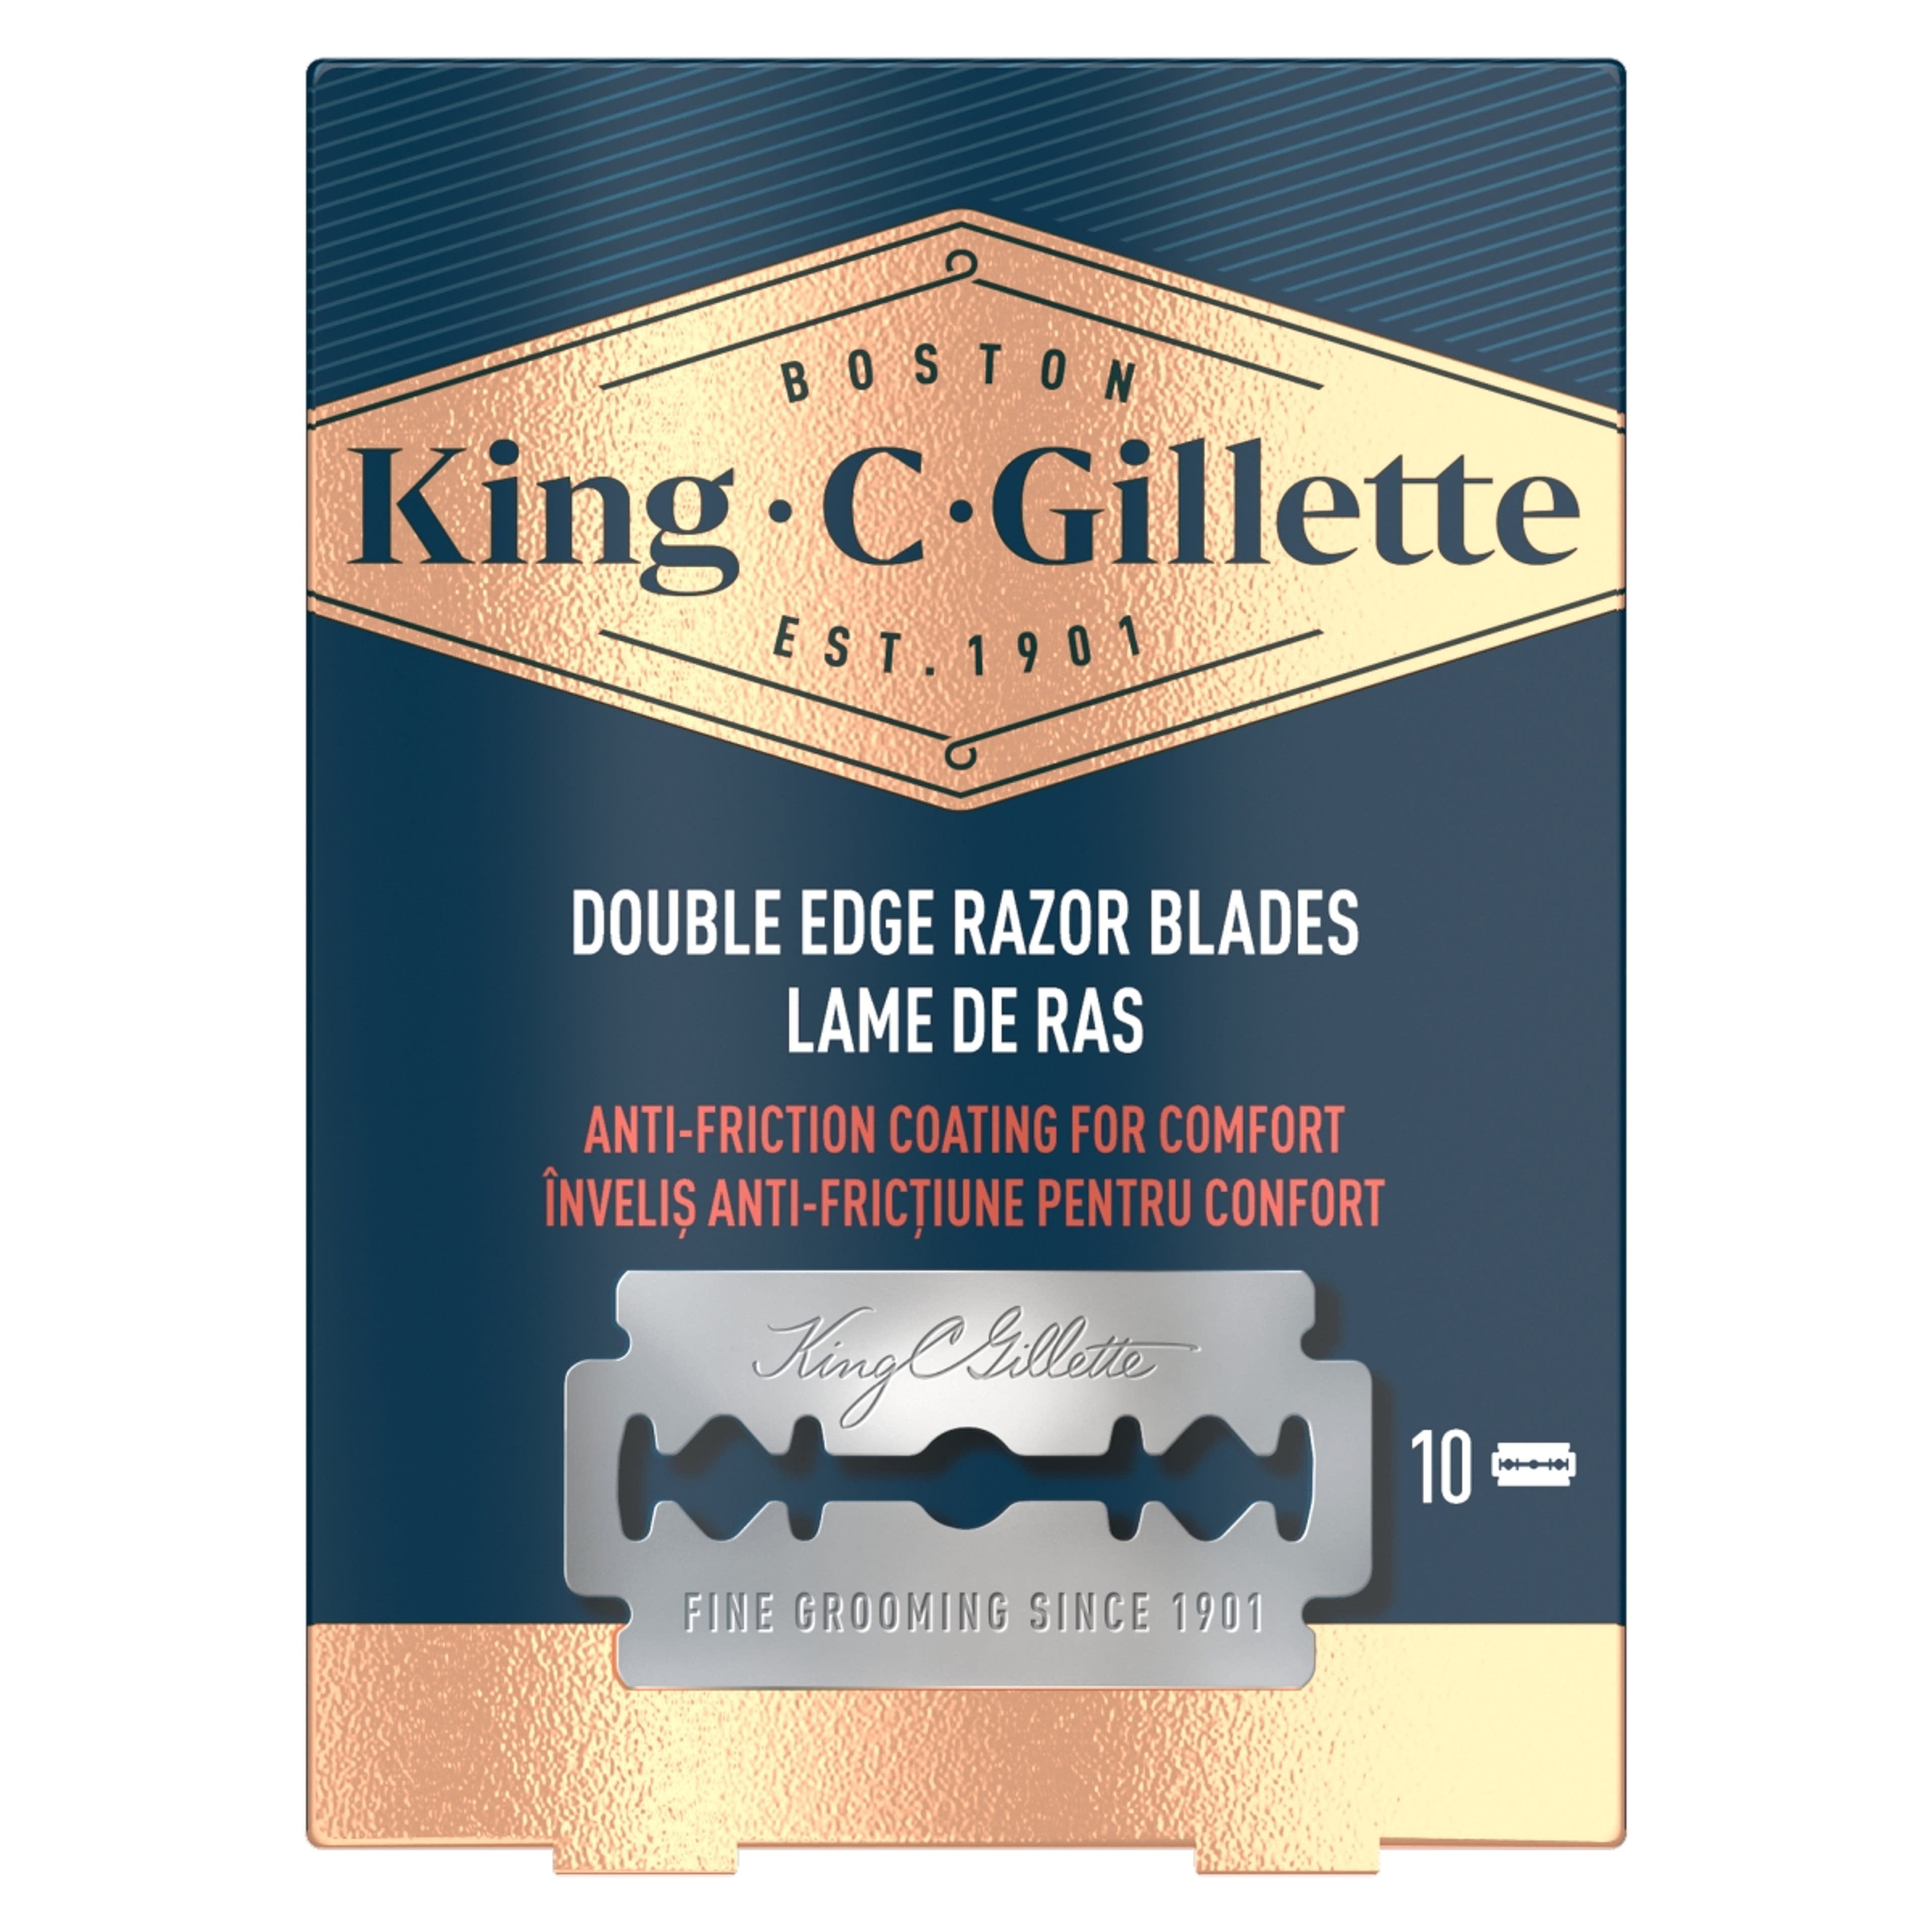 Gillette King C. Double Edge borotvabetét - 10 db-1